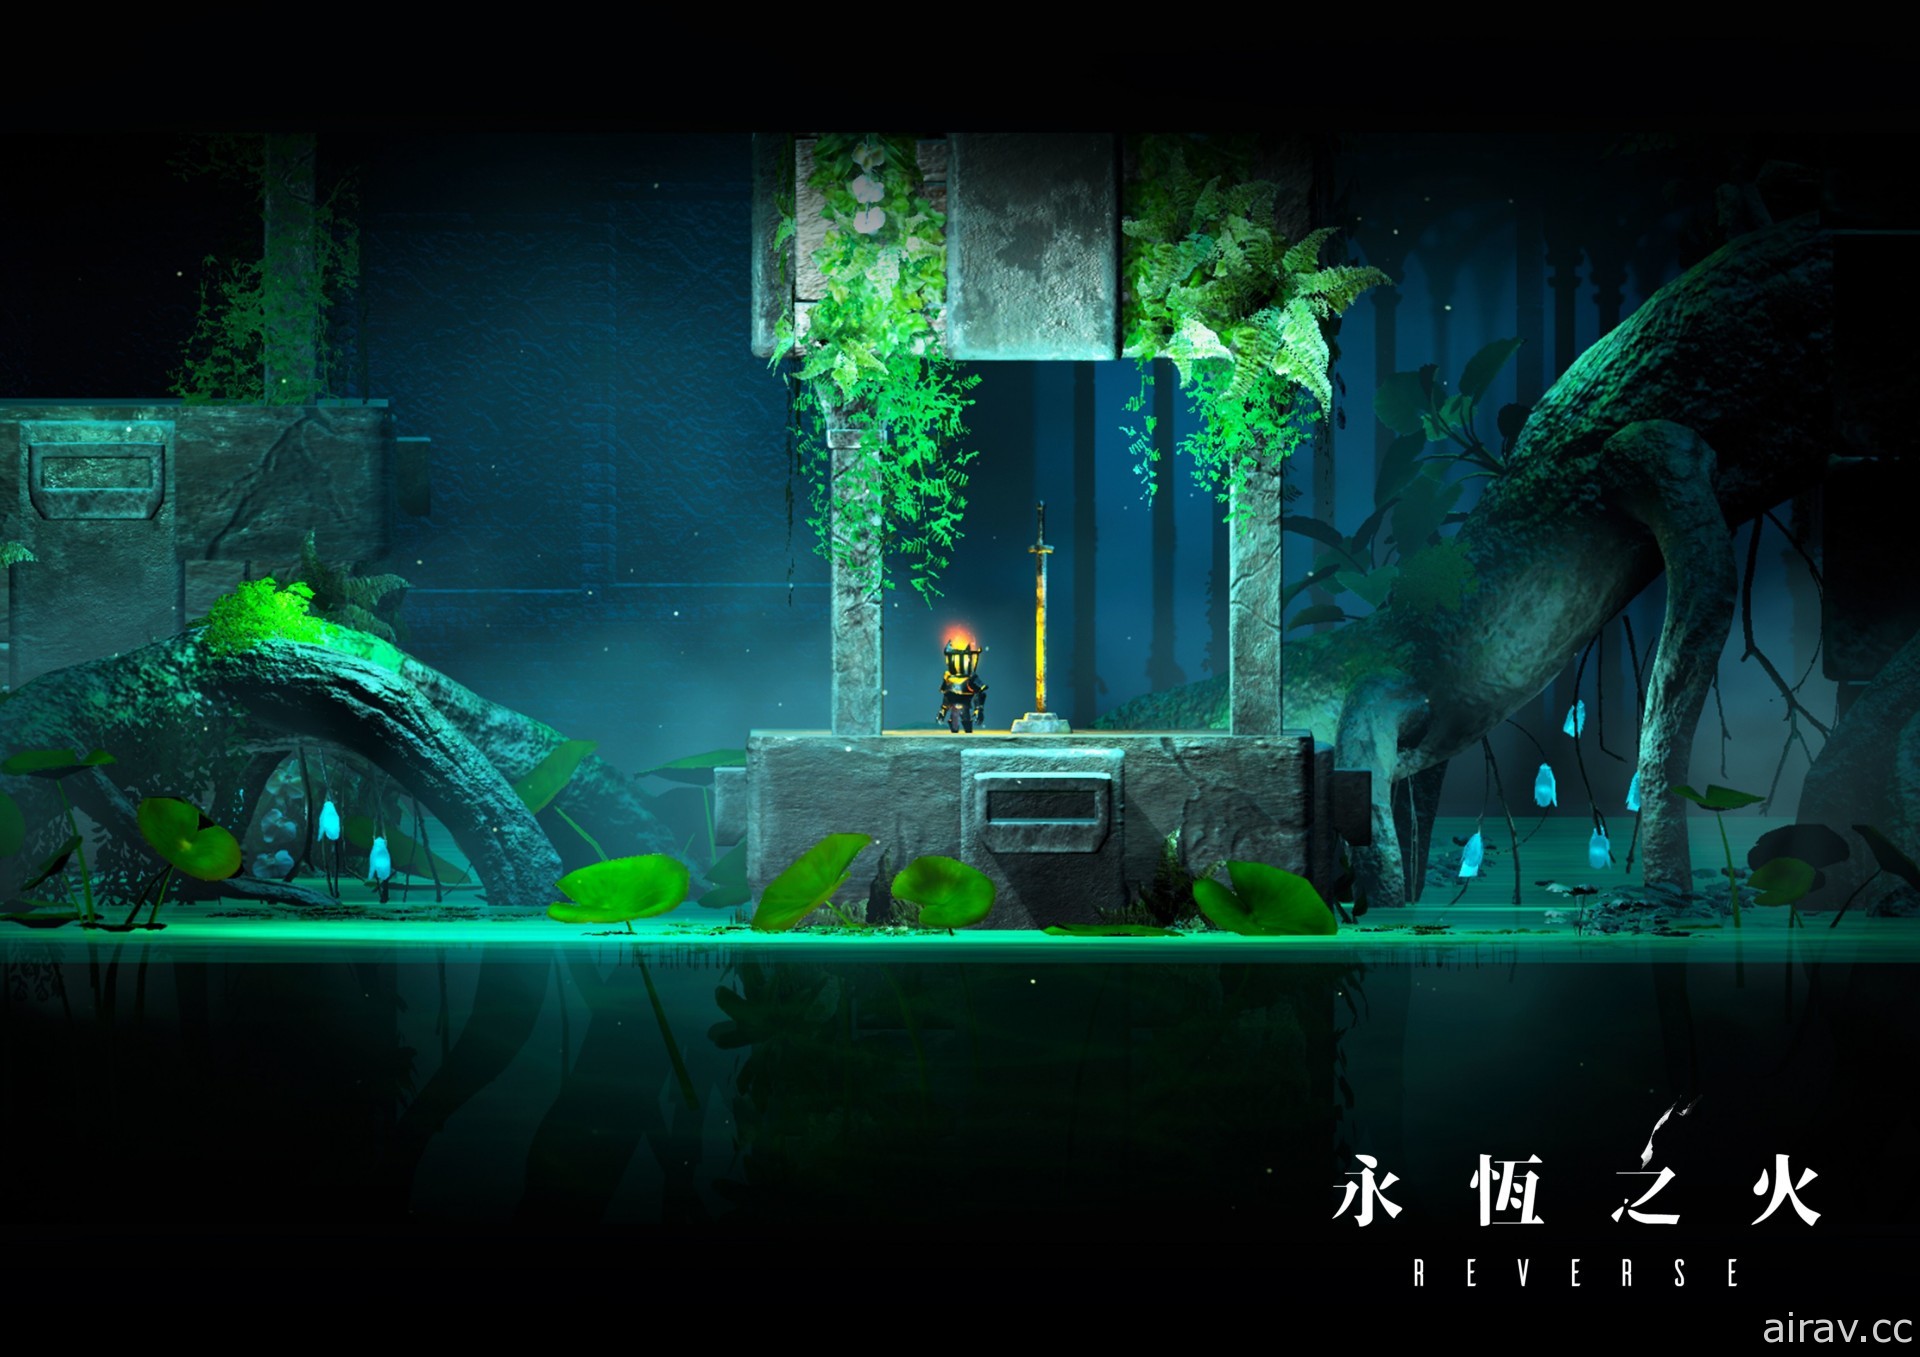 中国科大“RESET-STUDIO”制作冒险游戏《永恒之火》以视觉错视通过障碍与陷阱